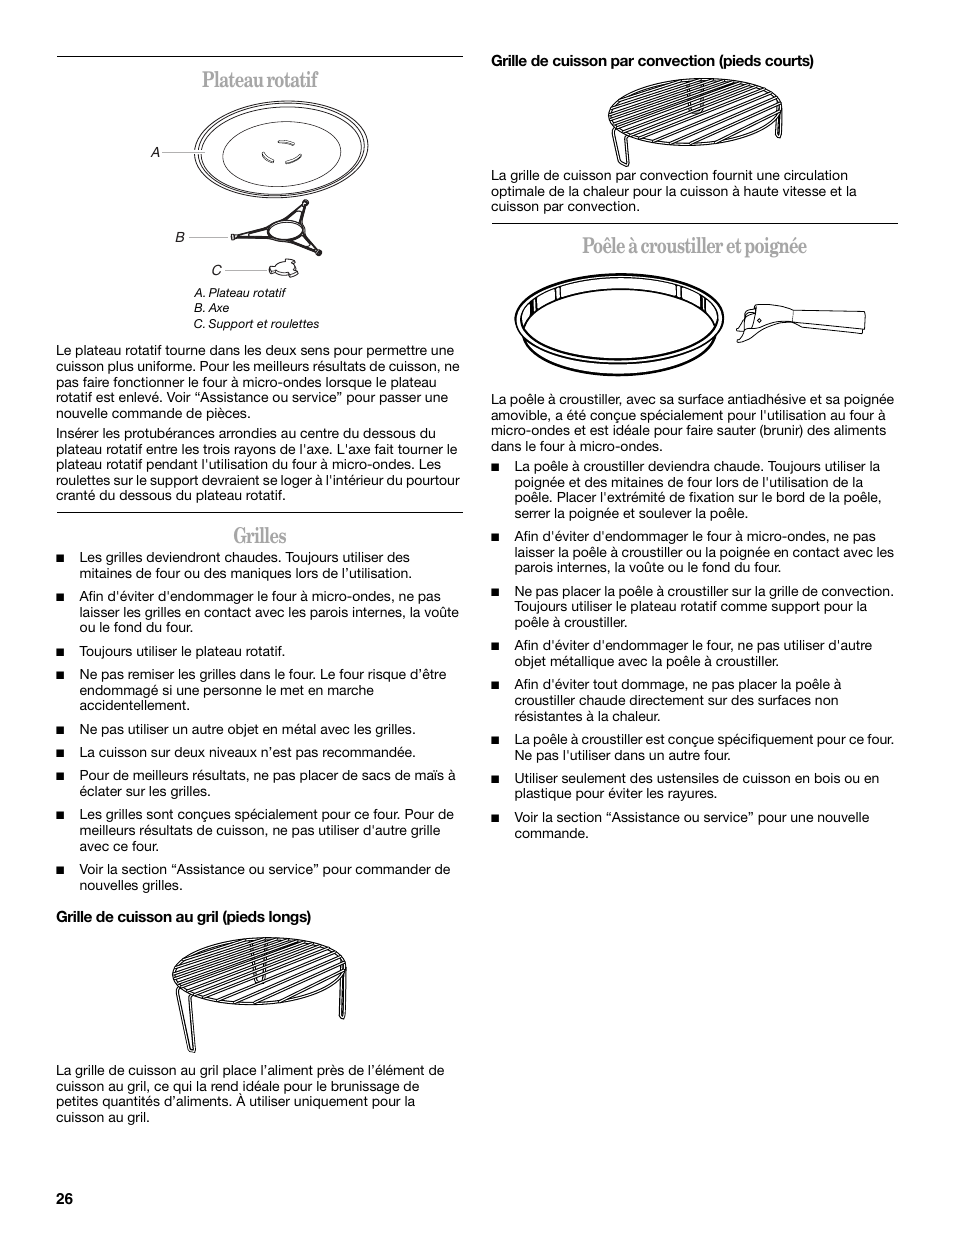 Plateau rotatif, Grilles, Poêle à croustiller et poignée | Whirlpool GSC309 Manuel d'utilisation | Page 26 / 48